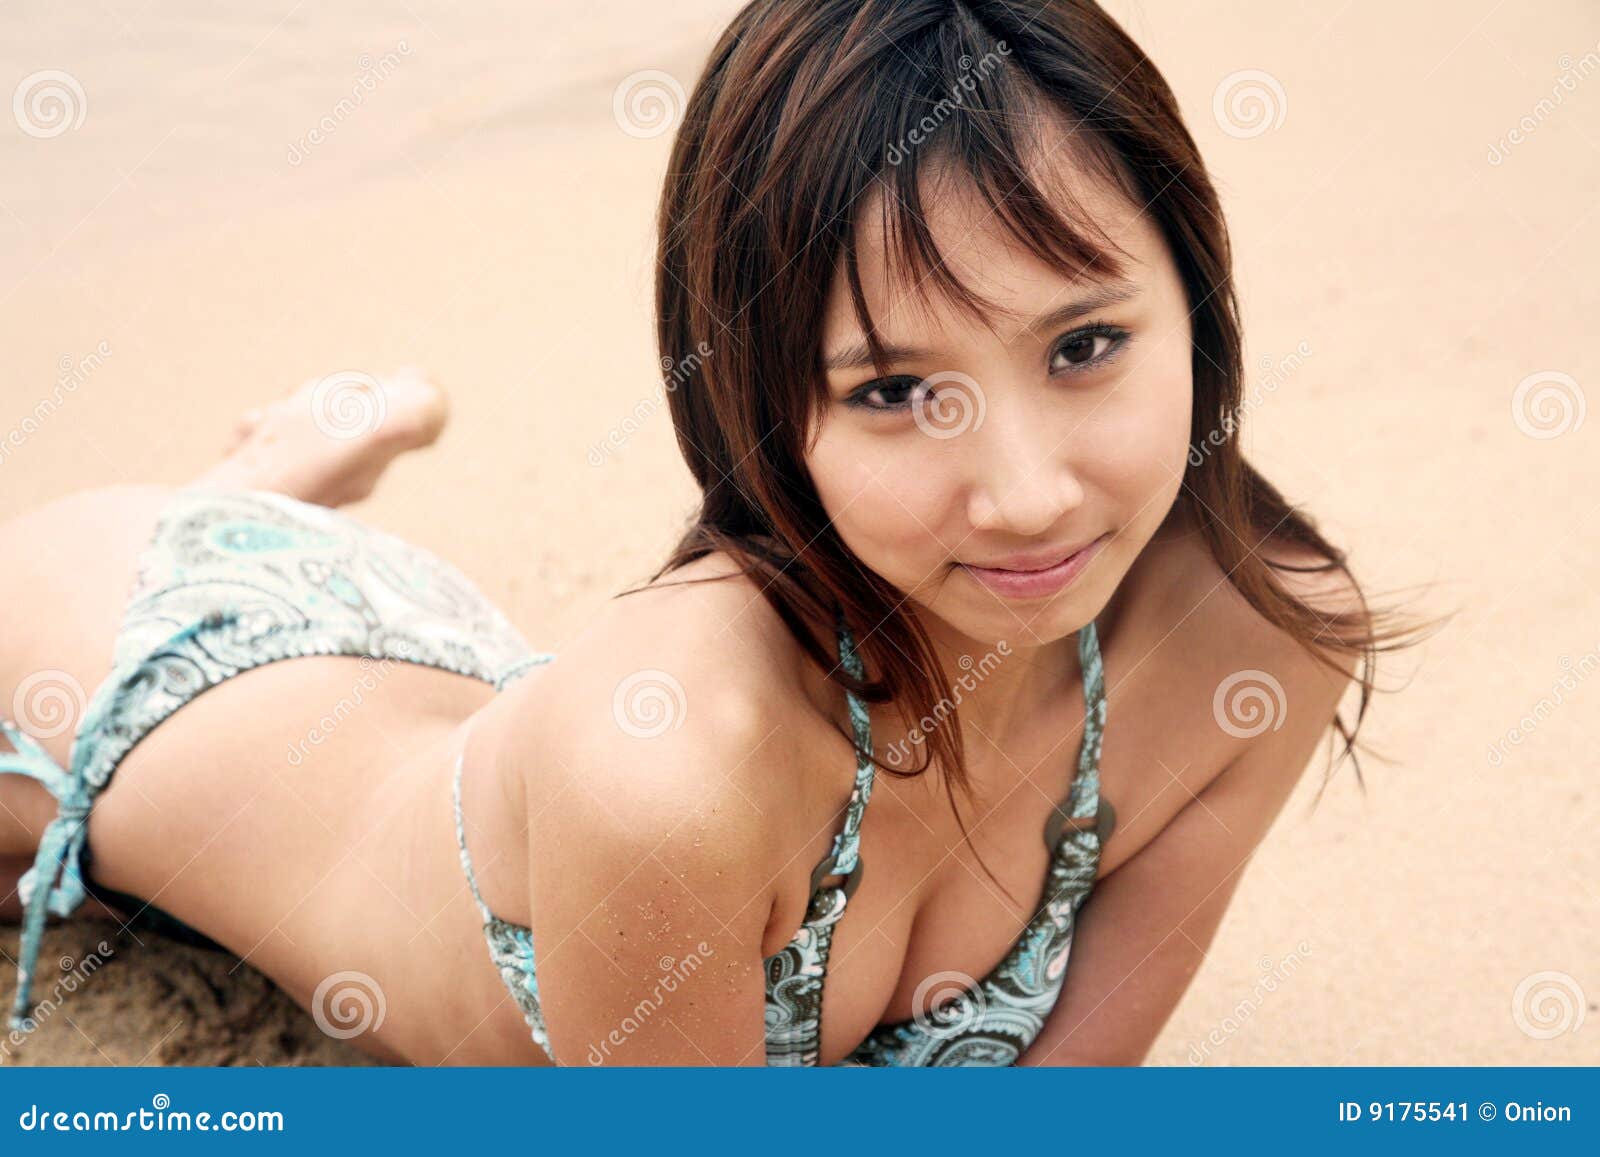 Cute Asian Girl in a Bikini Stock Image